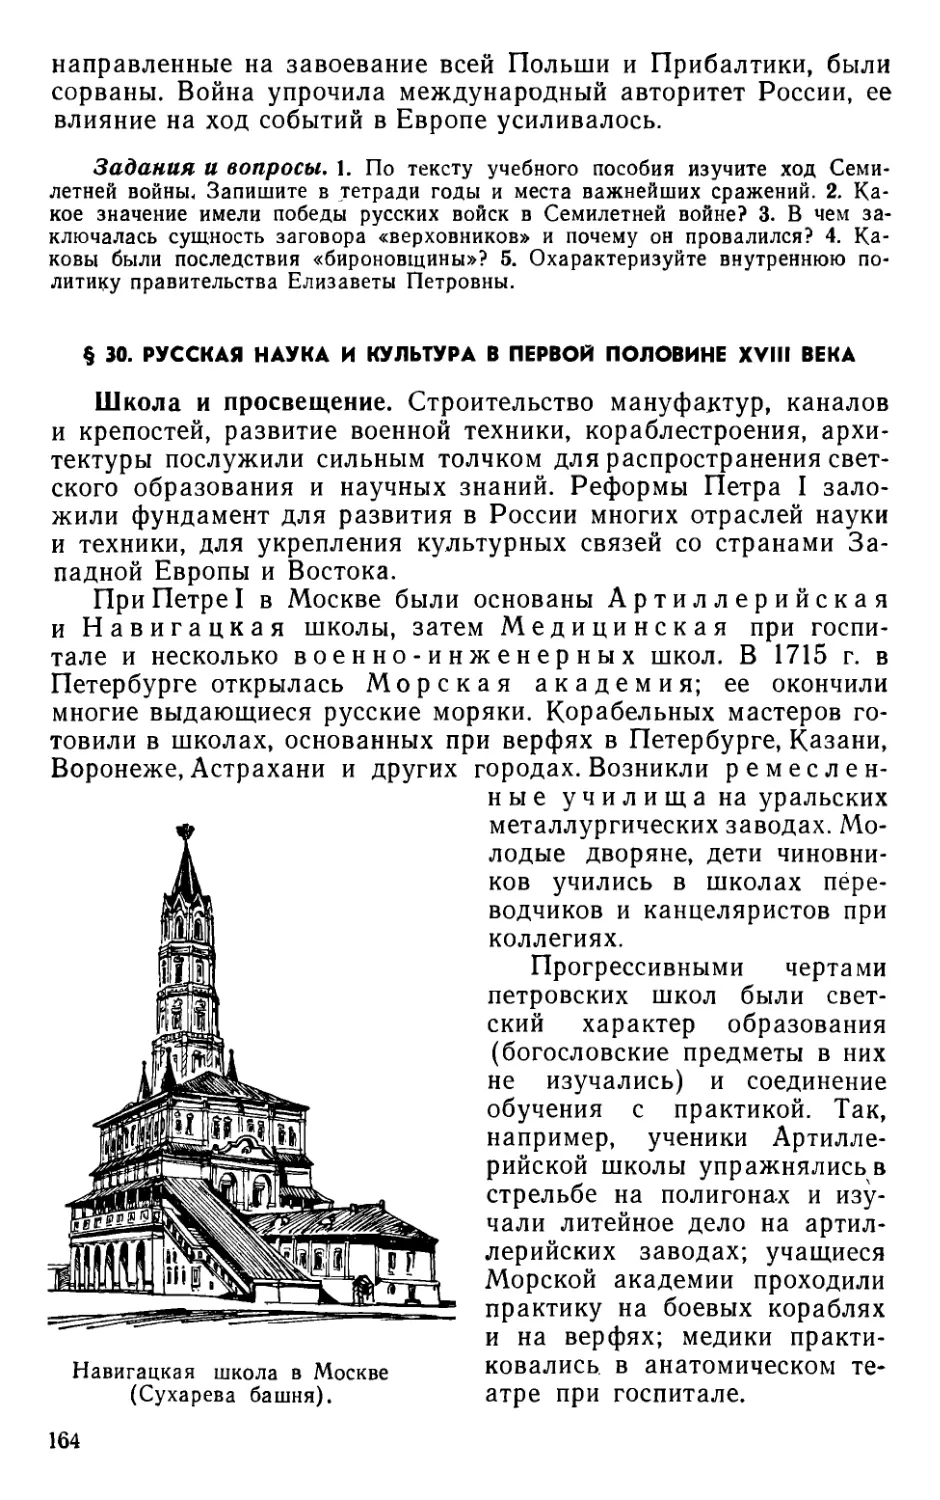 § 30. Русская наука и культура в первой половине XVIII века